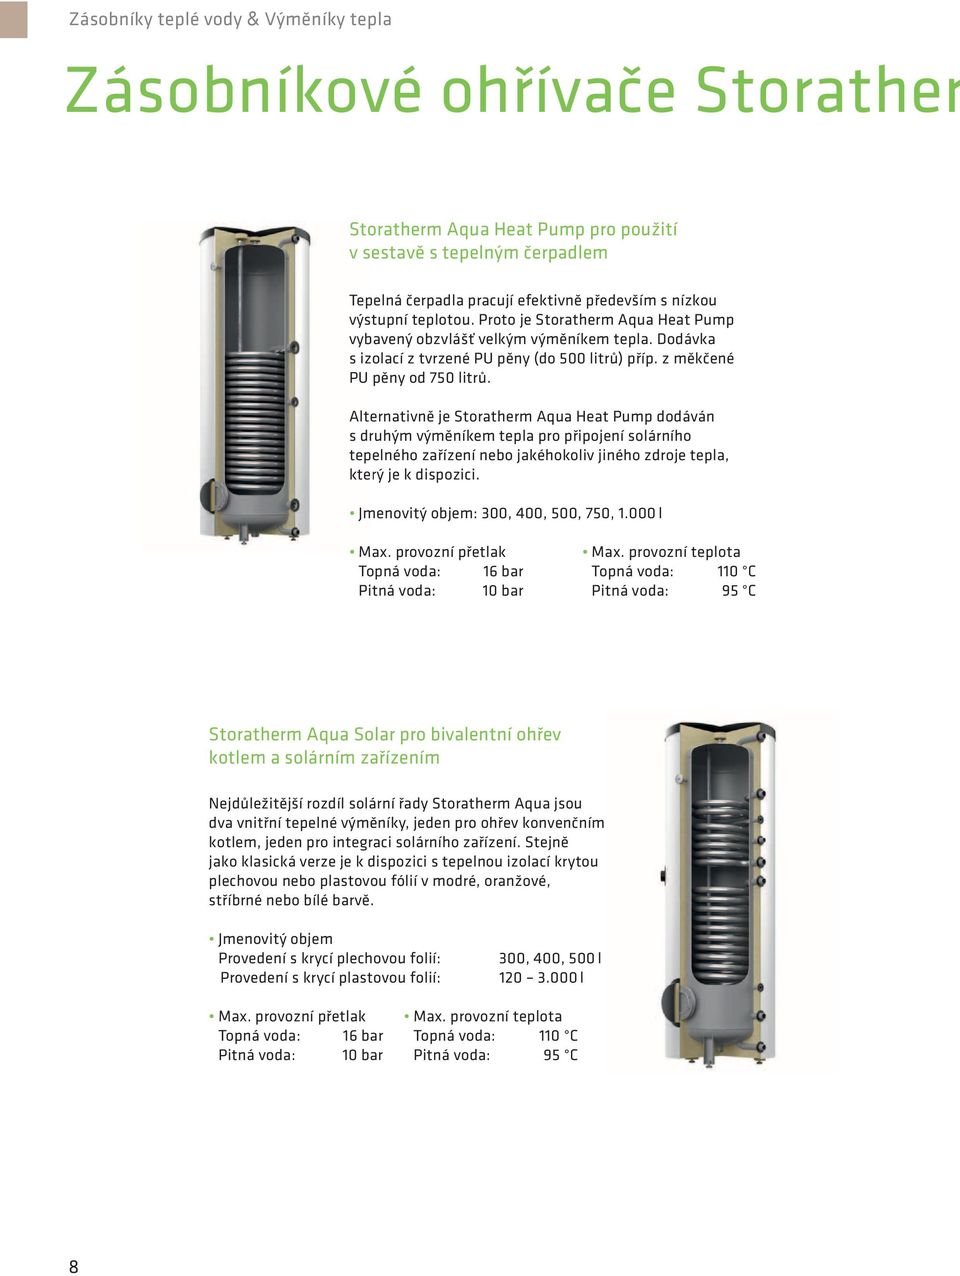 Alternativně je Storatherm Aqua Heat Pump dodáván s druhým výměníkem tepla pro připojení solárního tepelného zařízení nebo jakéhokoliv jiného zdroje tepla, který je k dispozici.